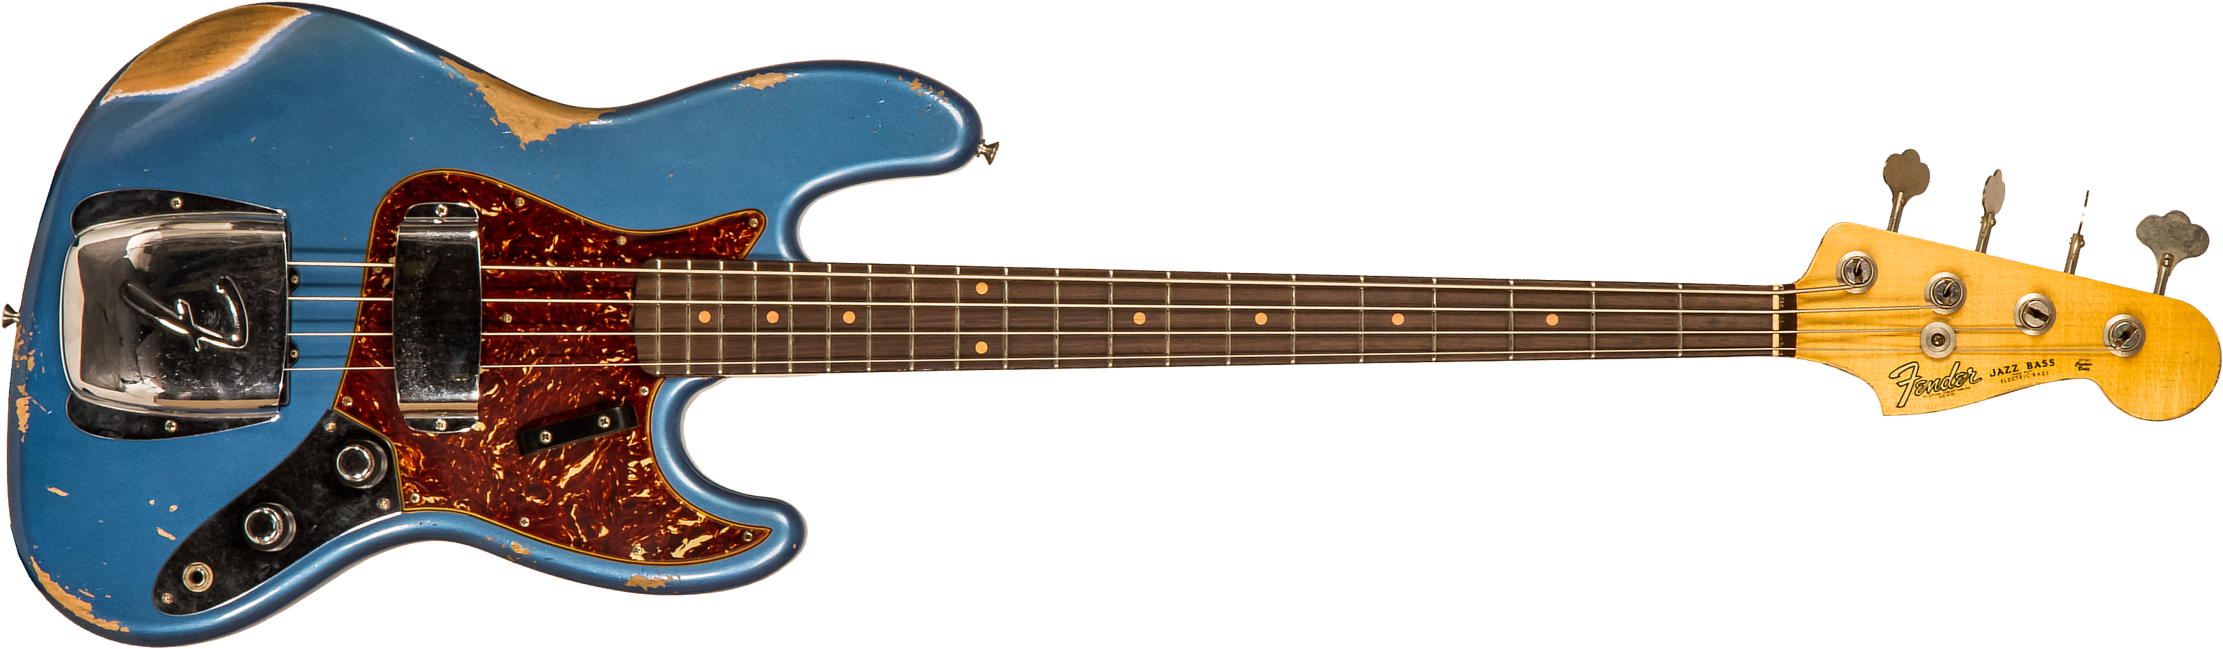 Fender Custom Shop Jazz Bass 1961 Rw #cz556667 - Heavy Relic Lake Placid Blue - Basse Électrique Solid Body - Main picture